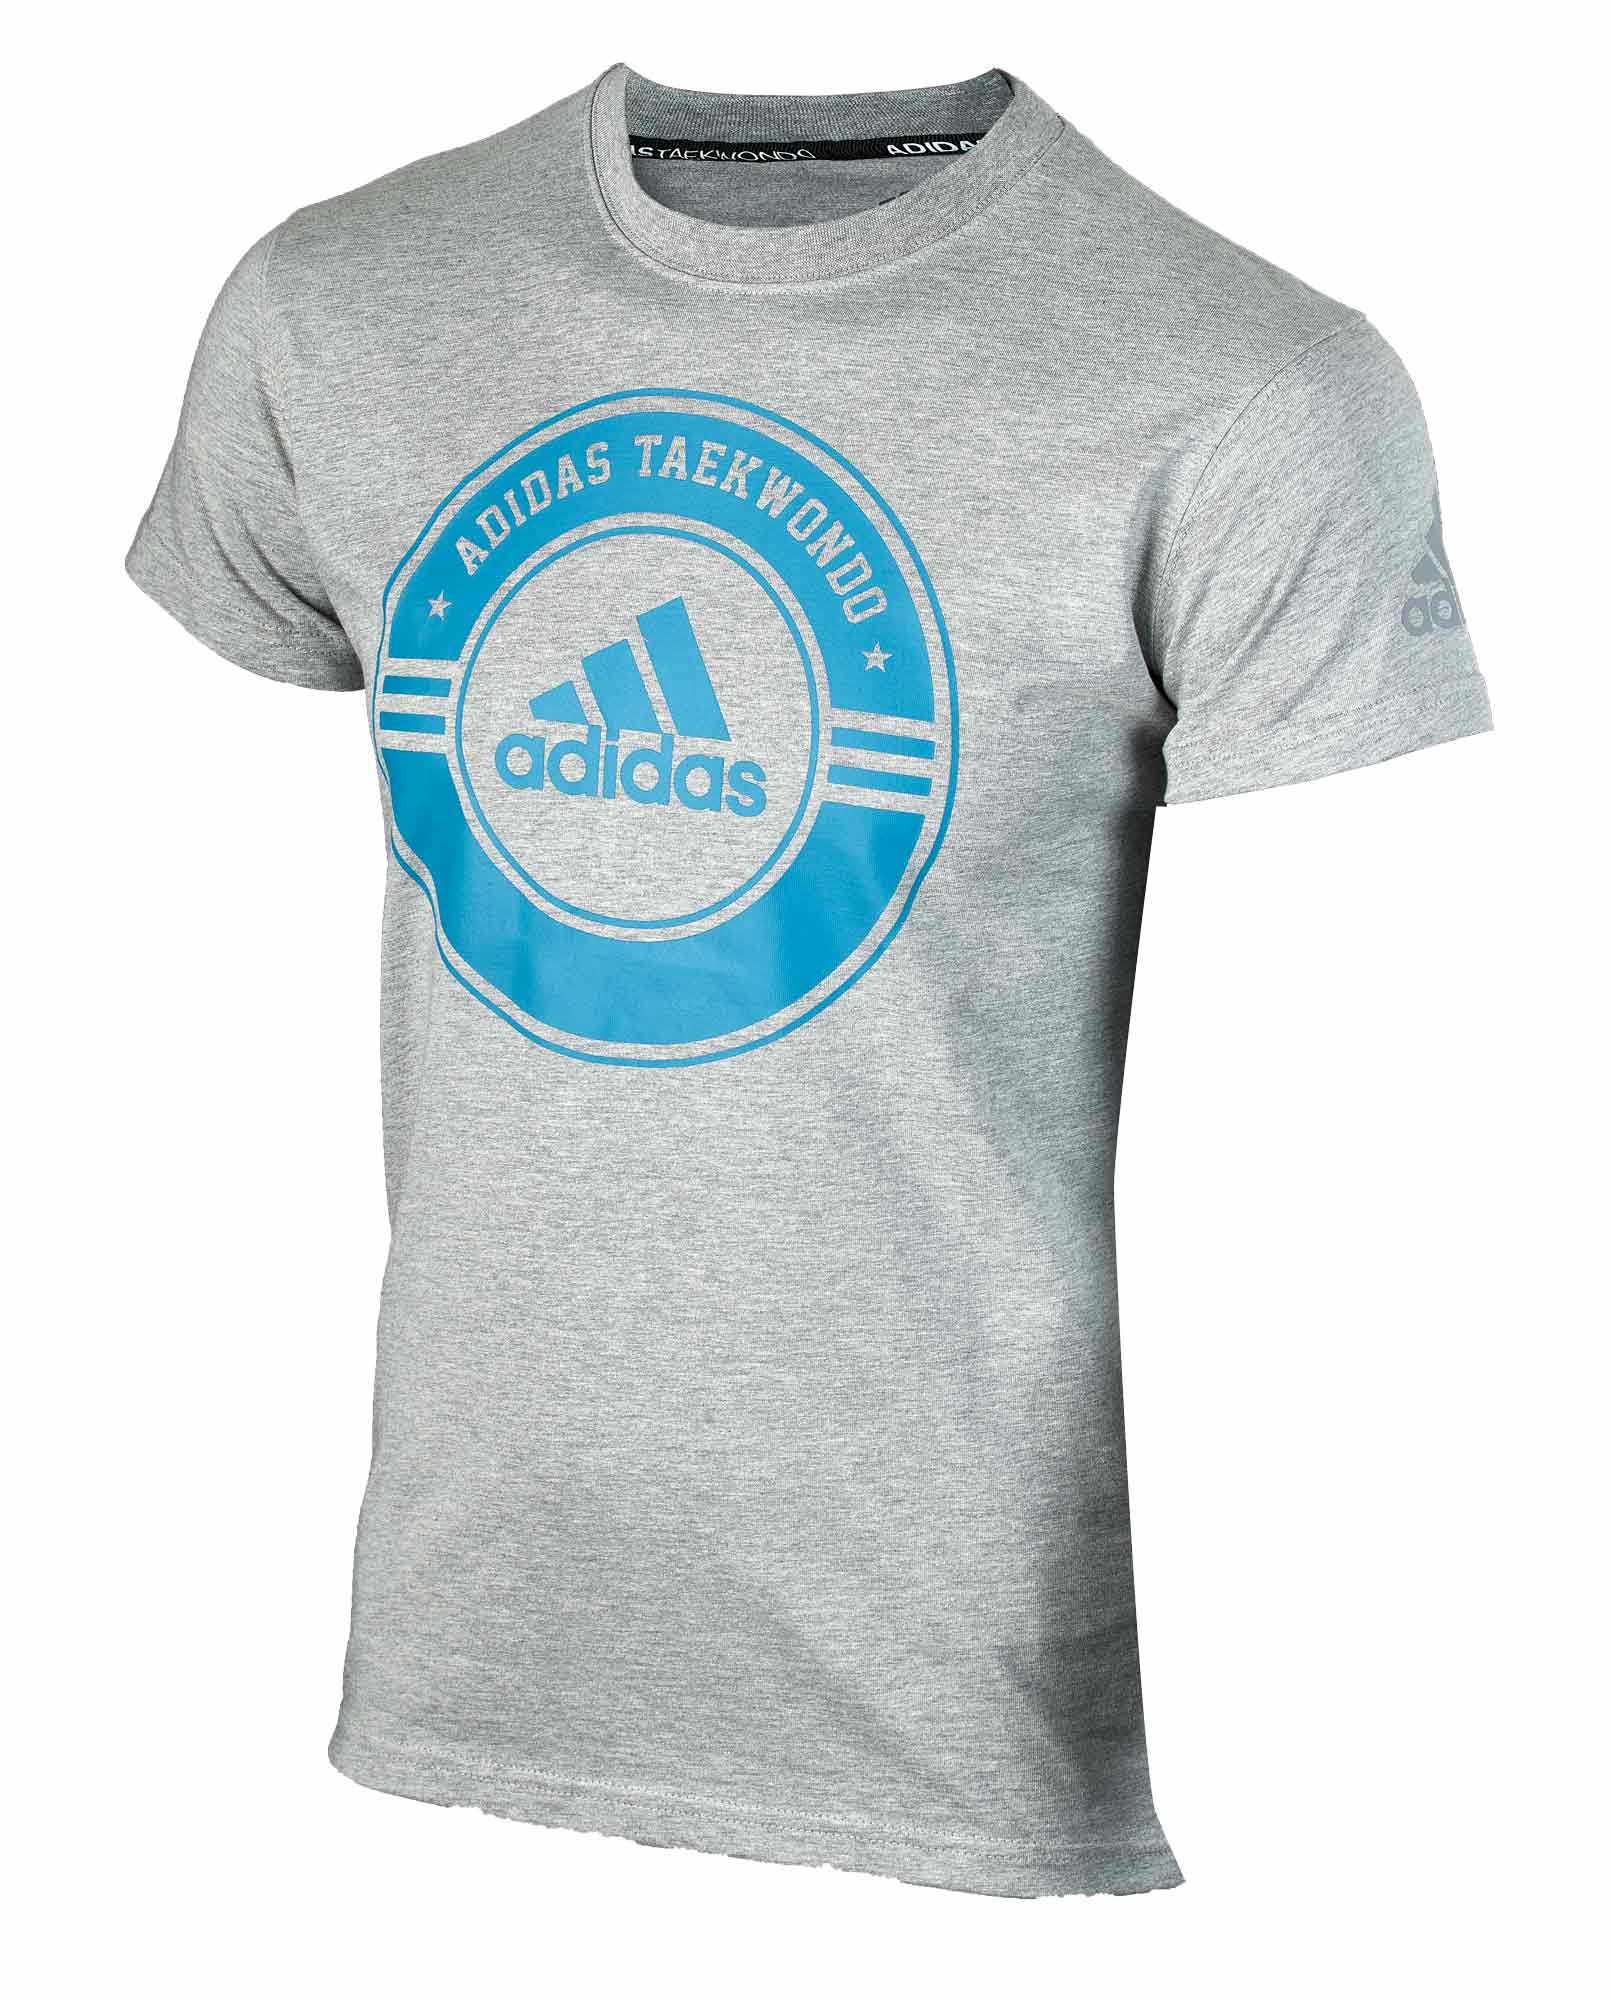 adidas Community Line T-Shirt Taekwondo Circle adicsts01T grey/blue